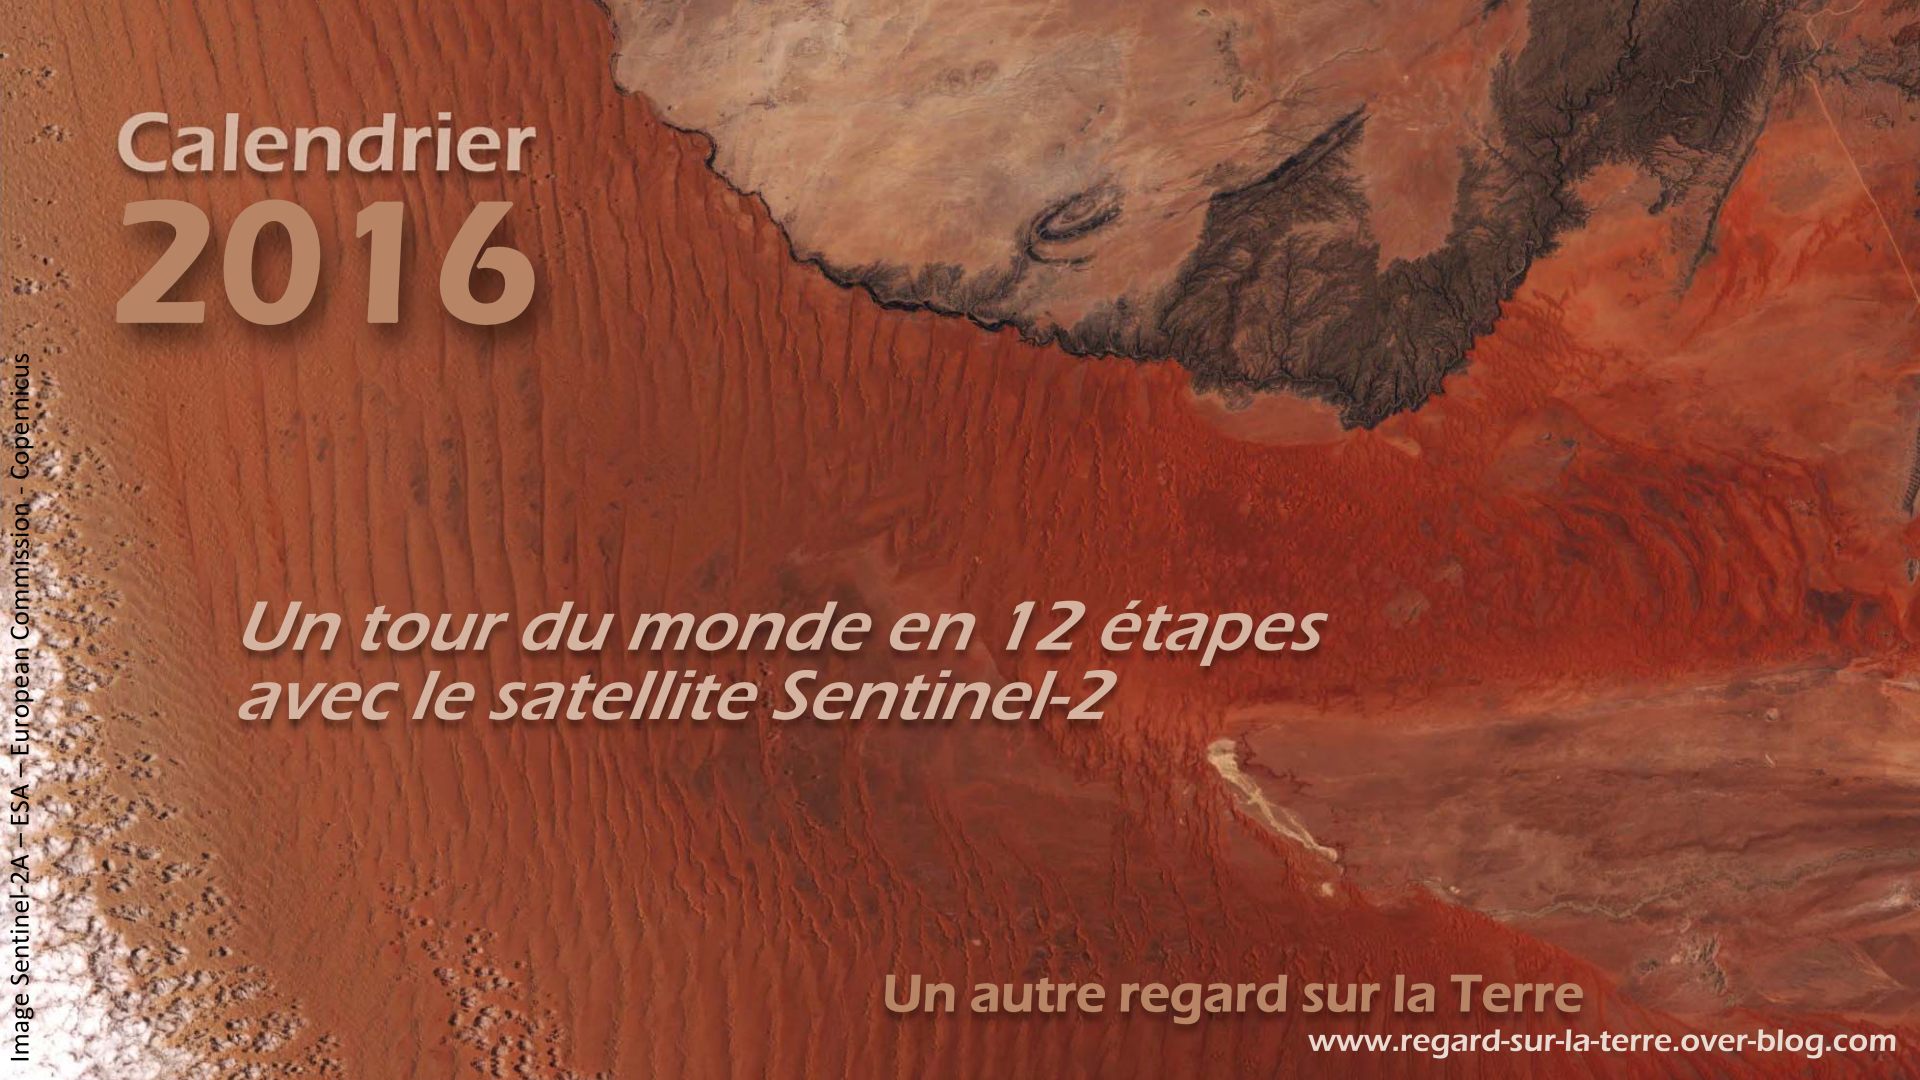 Calendrier spatial - 2016 - Sentinel-2 - ESA - Copernicus - Tour du monde - 12 étapes - 5000 orbites - Un autre regard sur la Terre - Gédéon